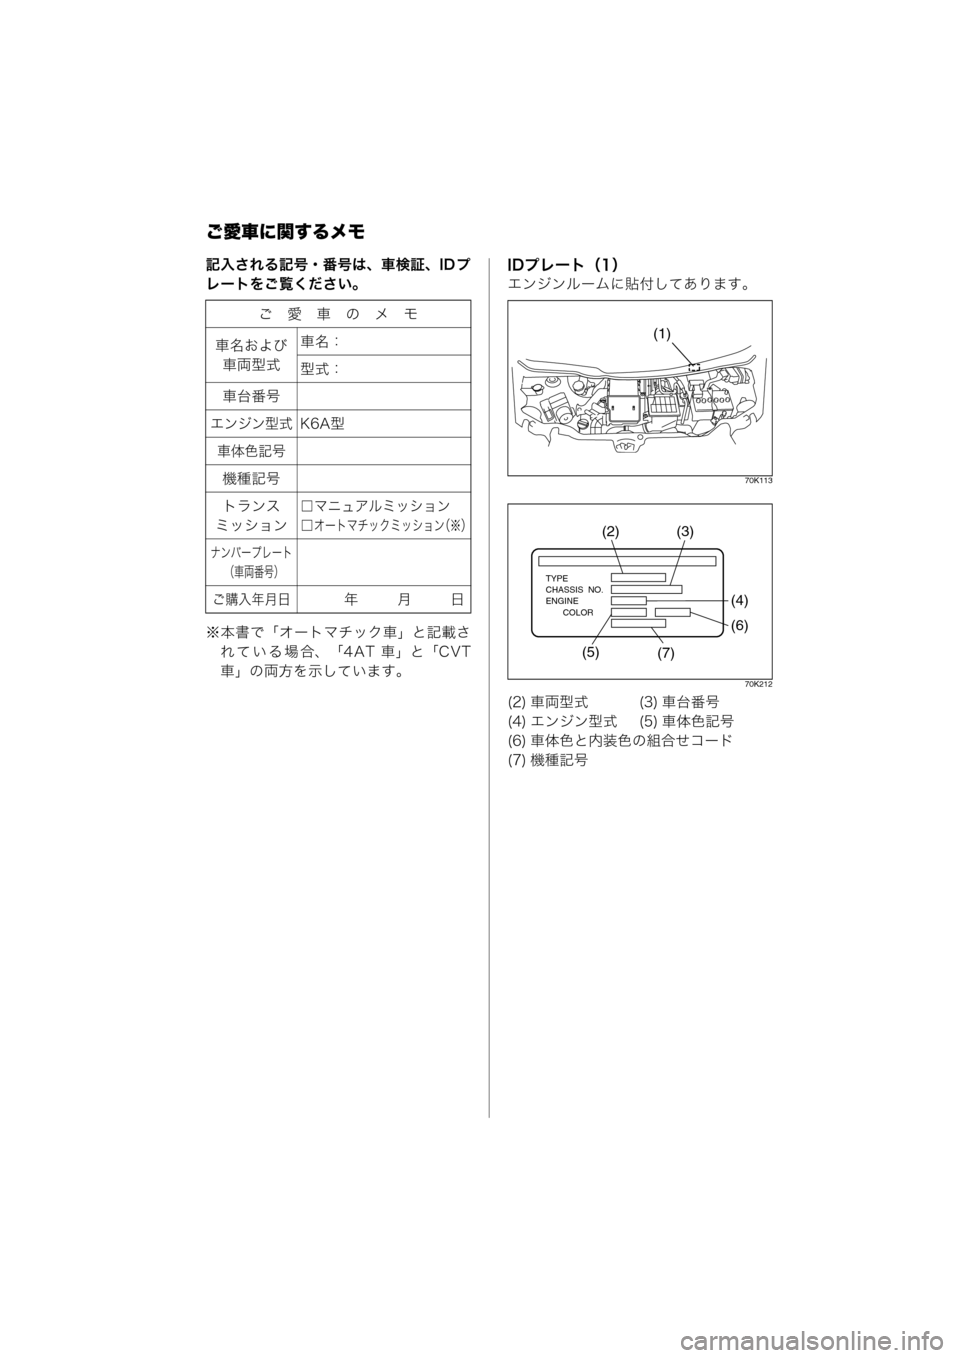 MAZDA MODEL AZ-WAGON 2012  ワゴン｜取扱説明書 (in Japanese) ご愛車に関するメモ
記入される記号・番号は、車検証、ID プ
レートをご覧ください。
※本書で「オートマチック車」と記載されている場合、「4 A T